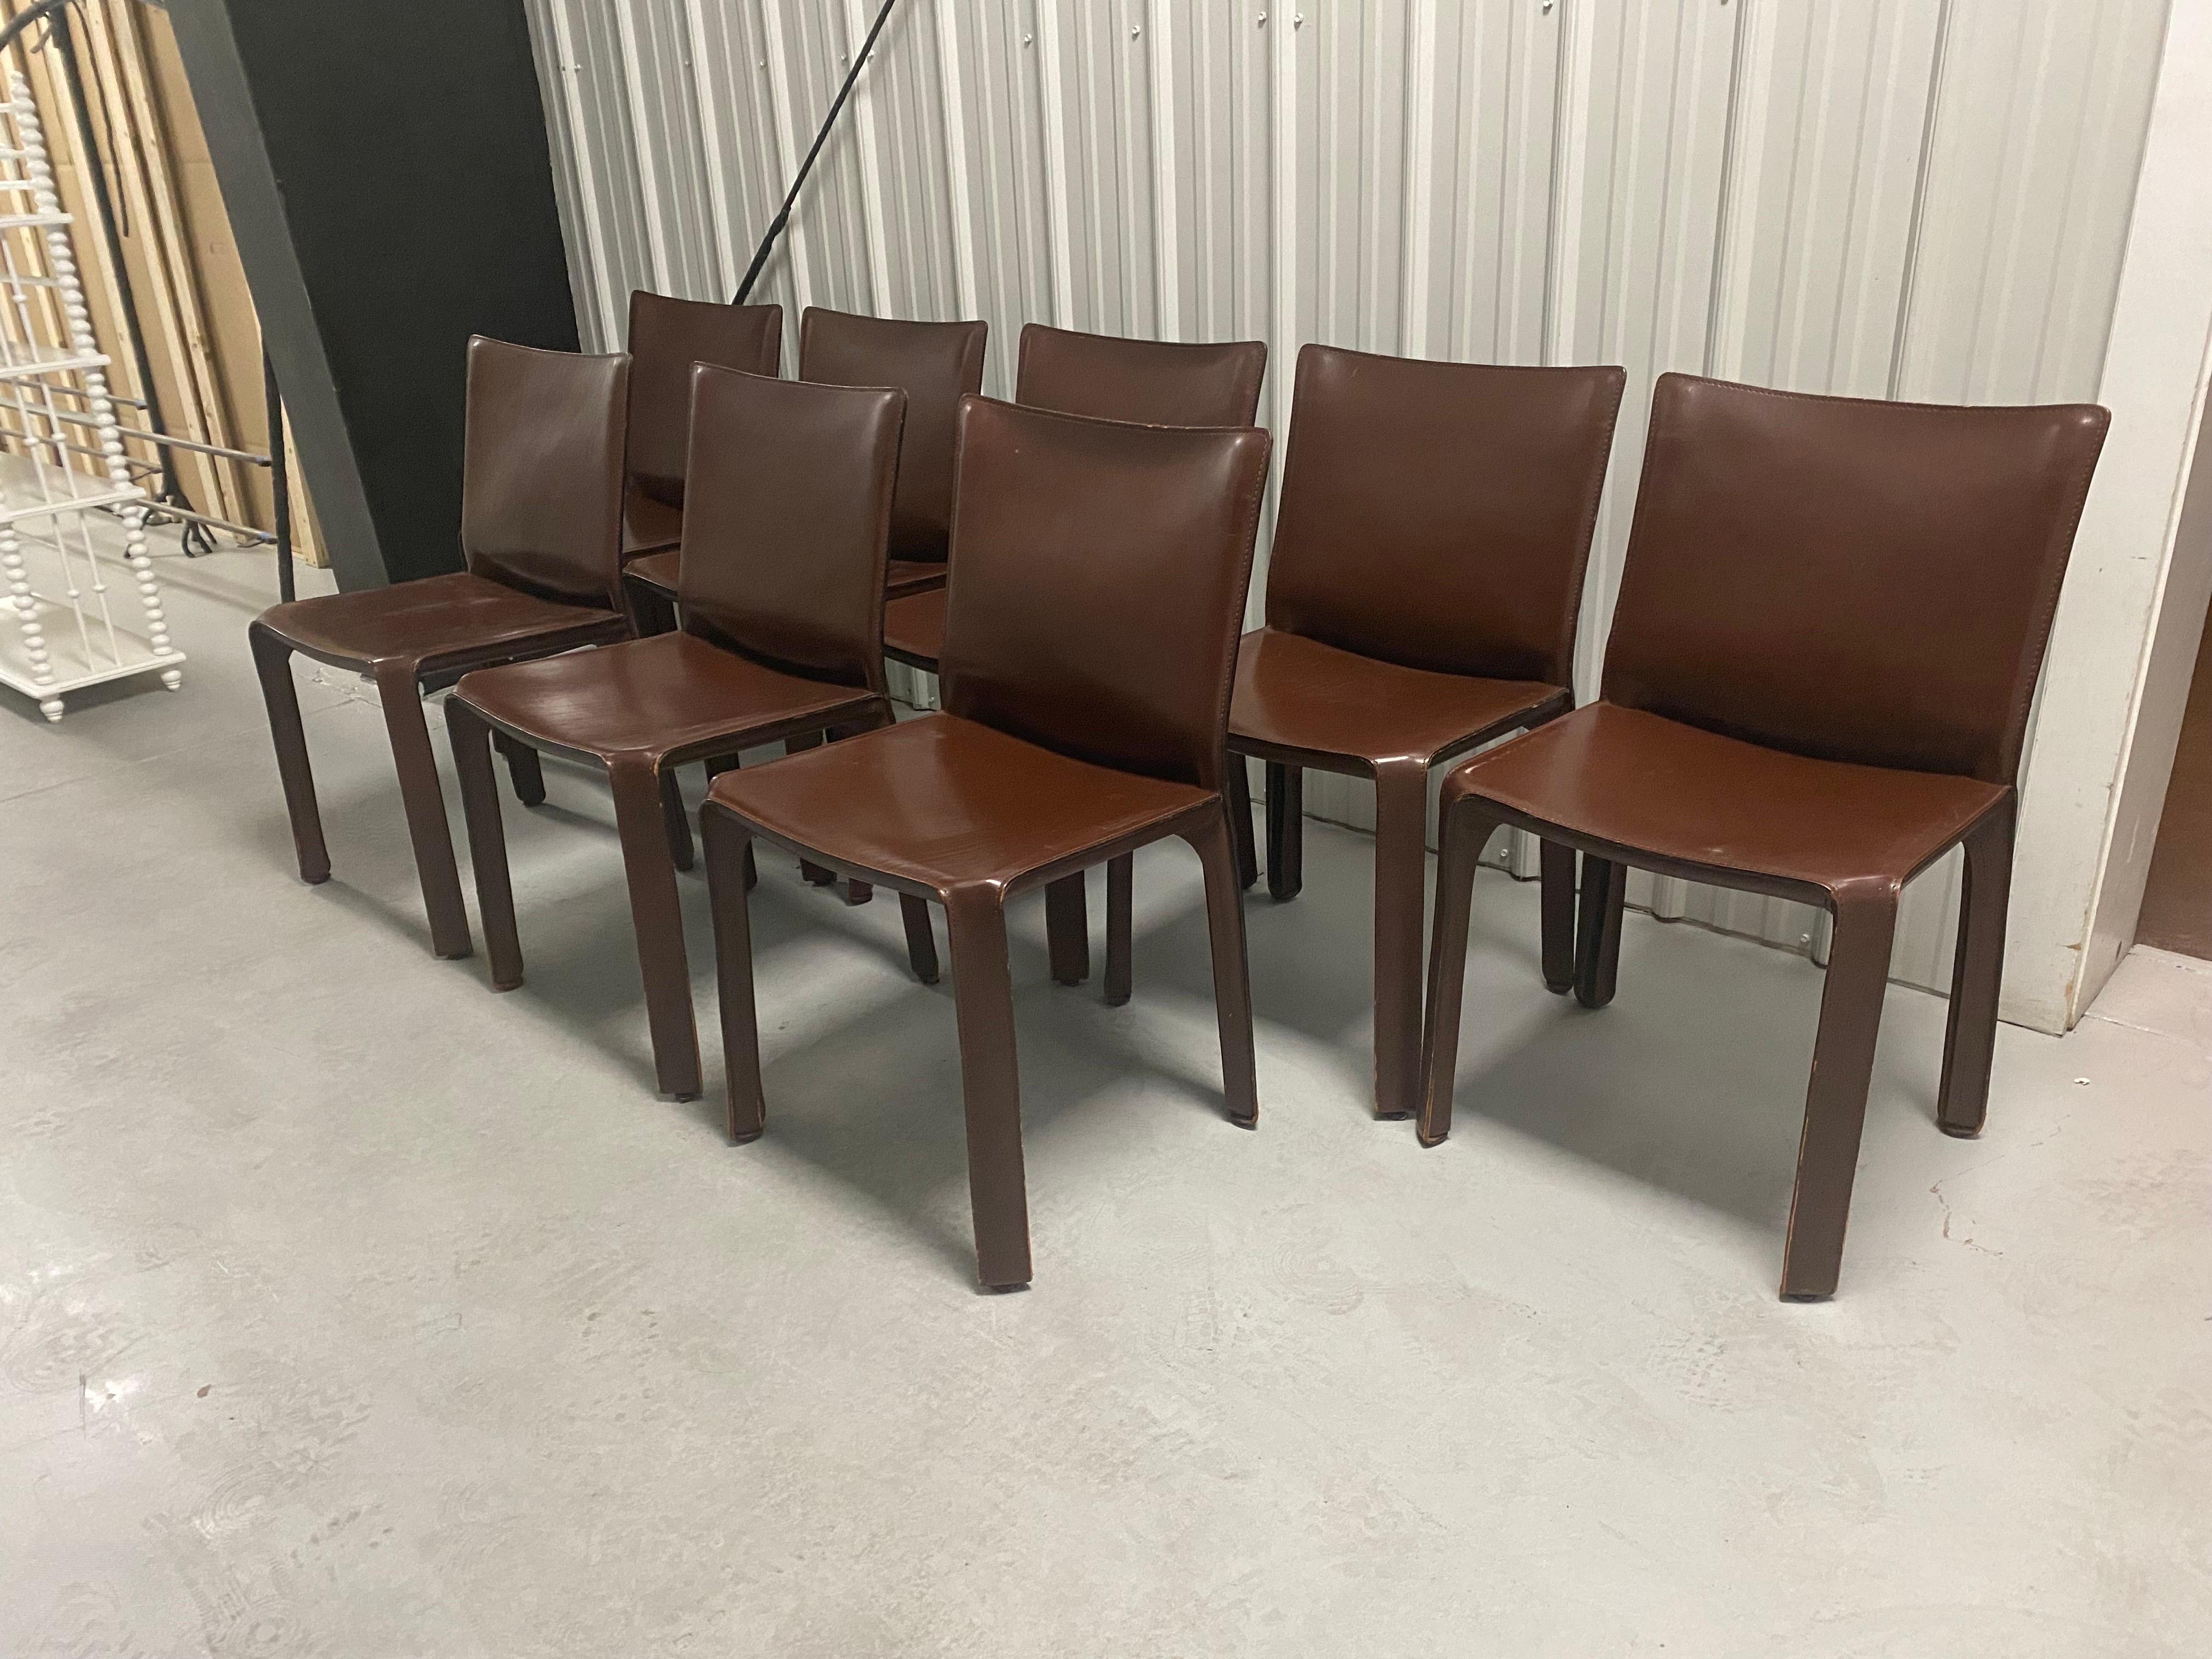 Magnifique ensemble de huit chaises Cab en cuir, conçu par Mario Bellini en 1976.
Fabriqué par Cassina vers les années 1990. L'ensemble se compose de huit chaises de salle à manger cab 412 recouvertes d'un cuir couleur acajou brun foncé. 